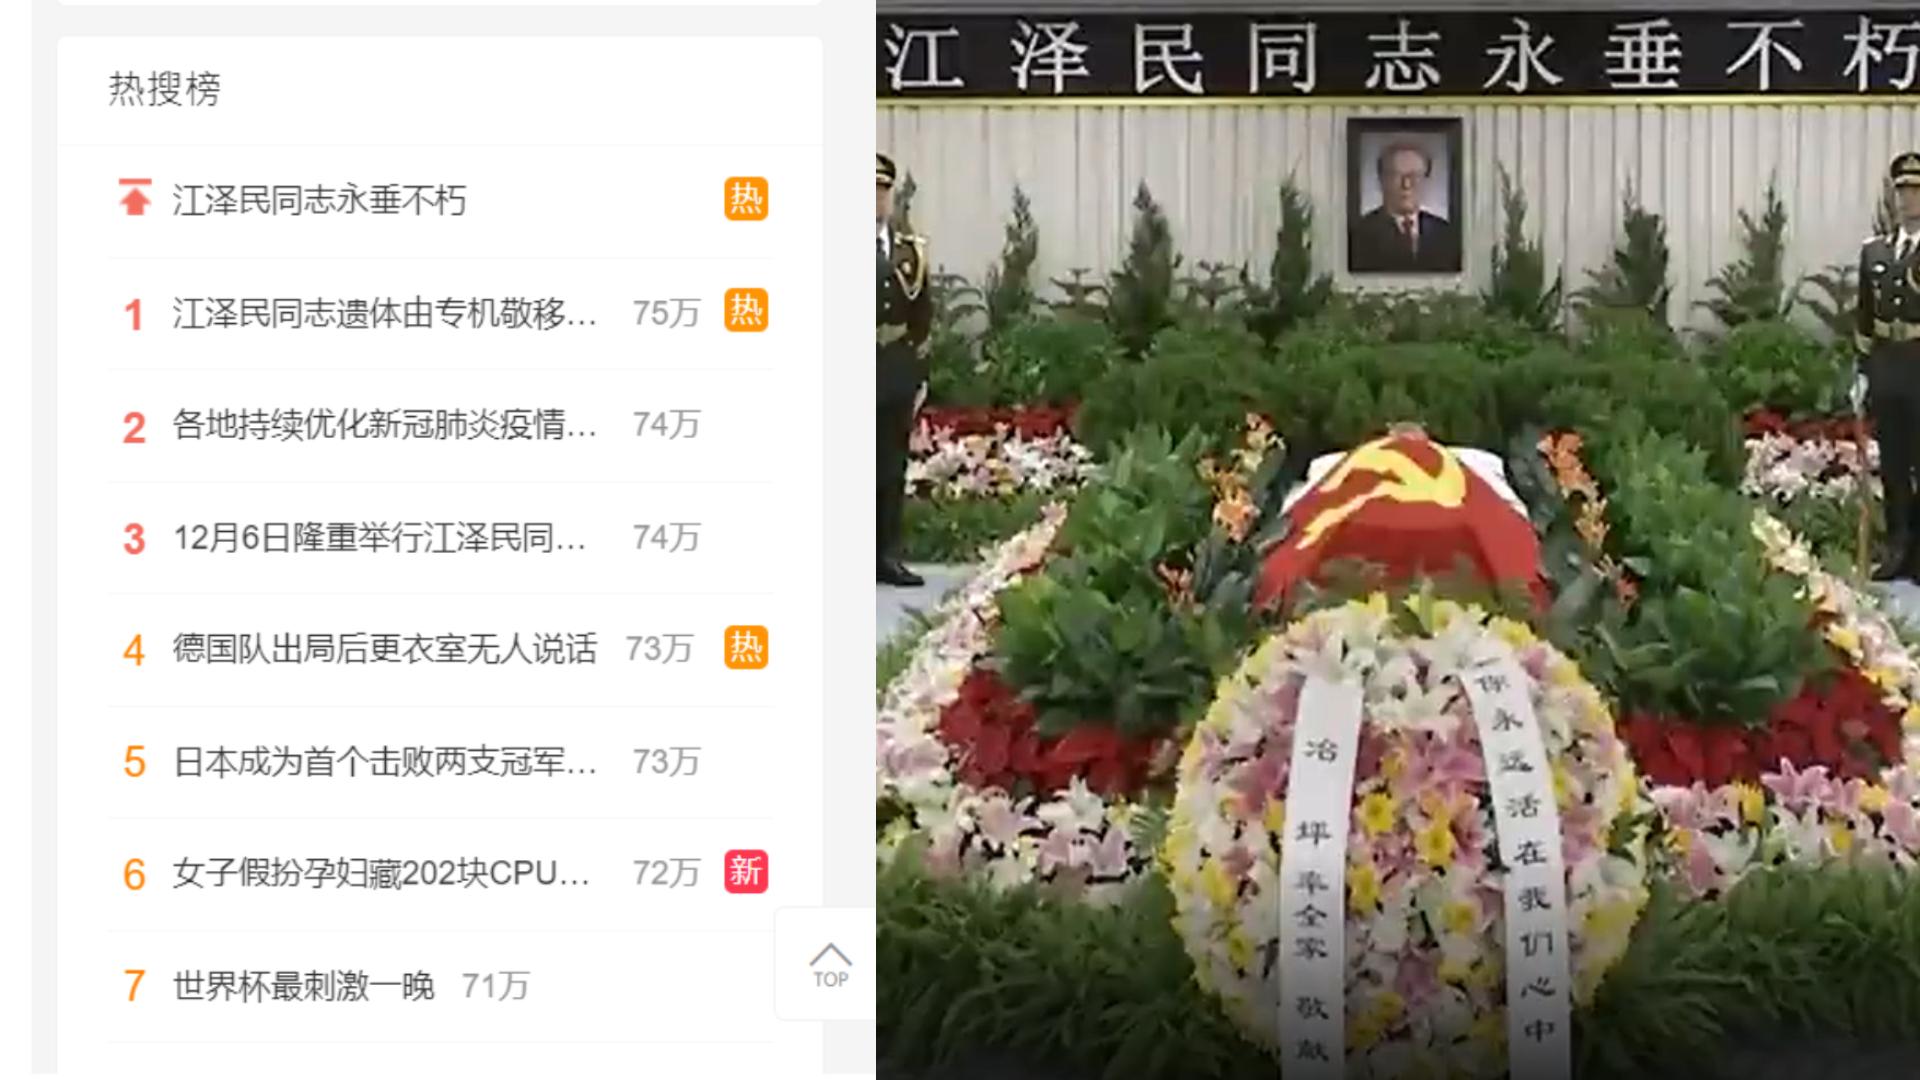 中國前國家主席江澤民病逝消息，以及懷念文成微博熱搜主題。 合成圖取自微博網頁、新華社